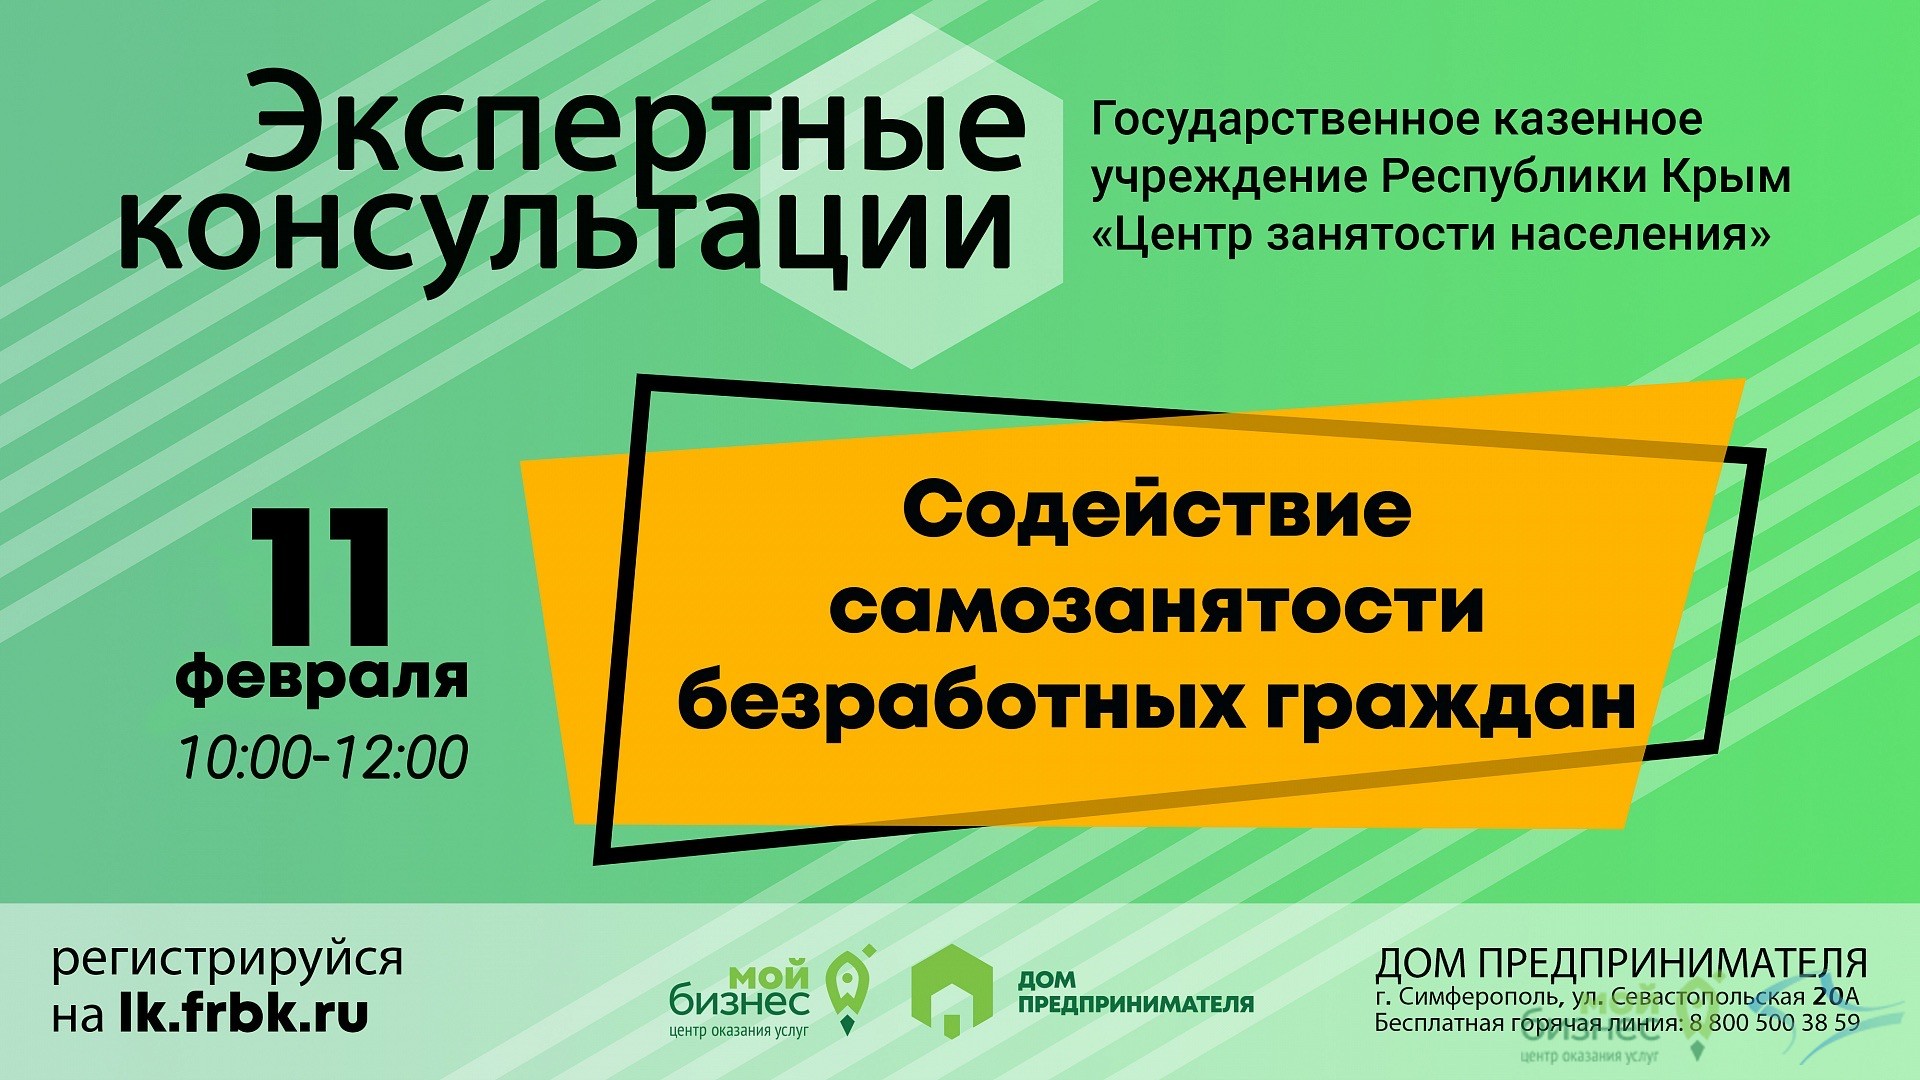 Приглашаем принять участие в семинаре на тему: Содействие самозанятости безработных граждан от ТО ГКУ РК «Центр занятости населения»